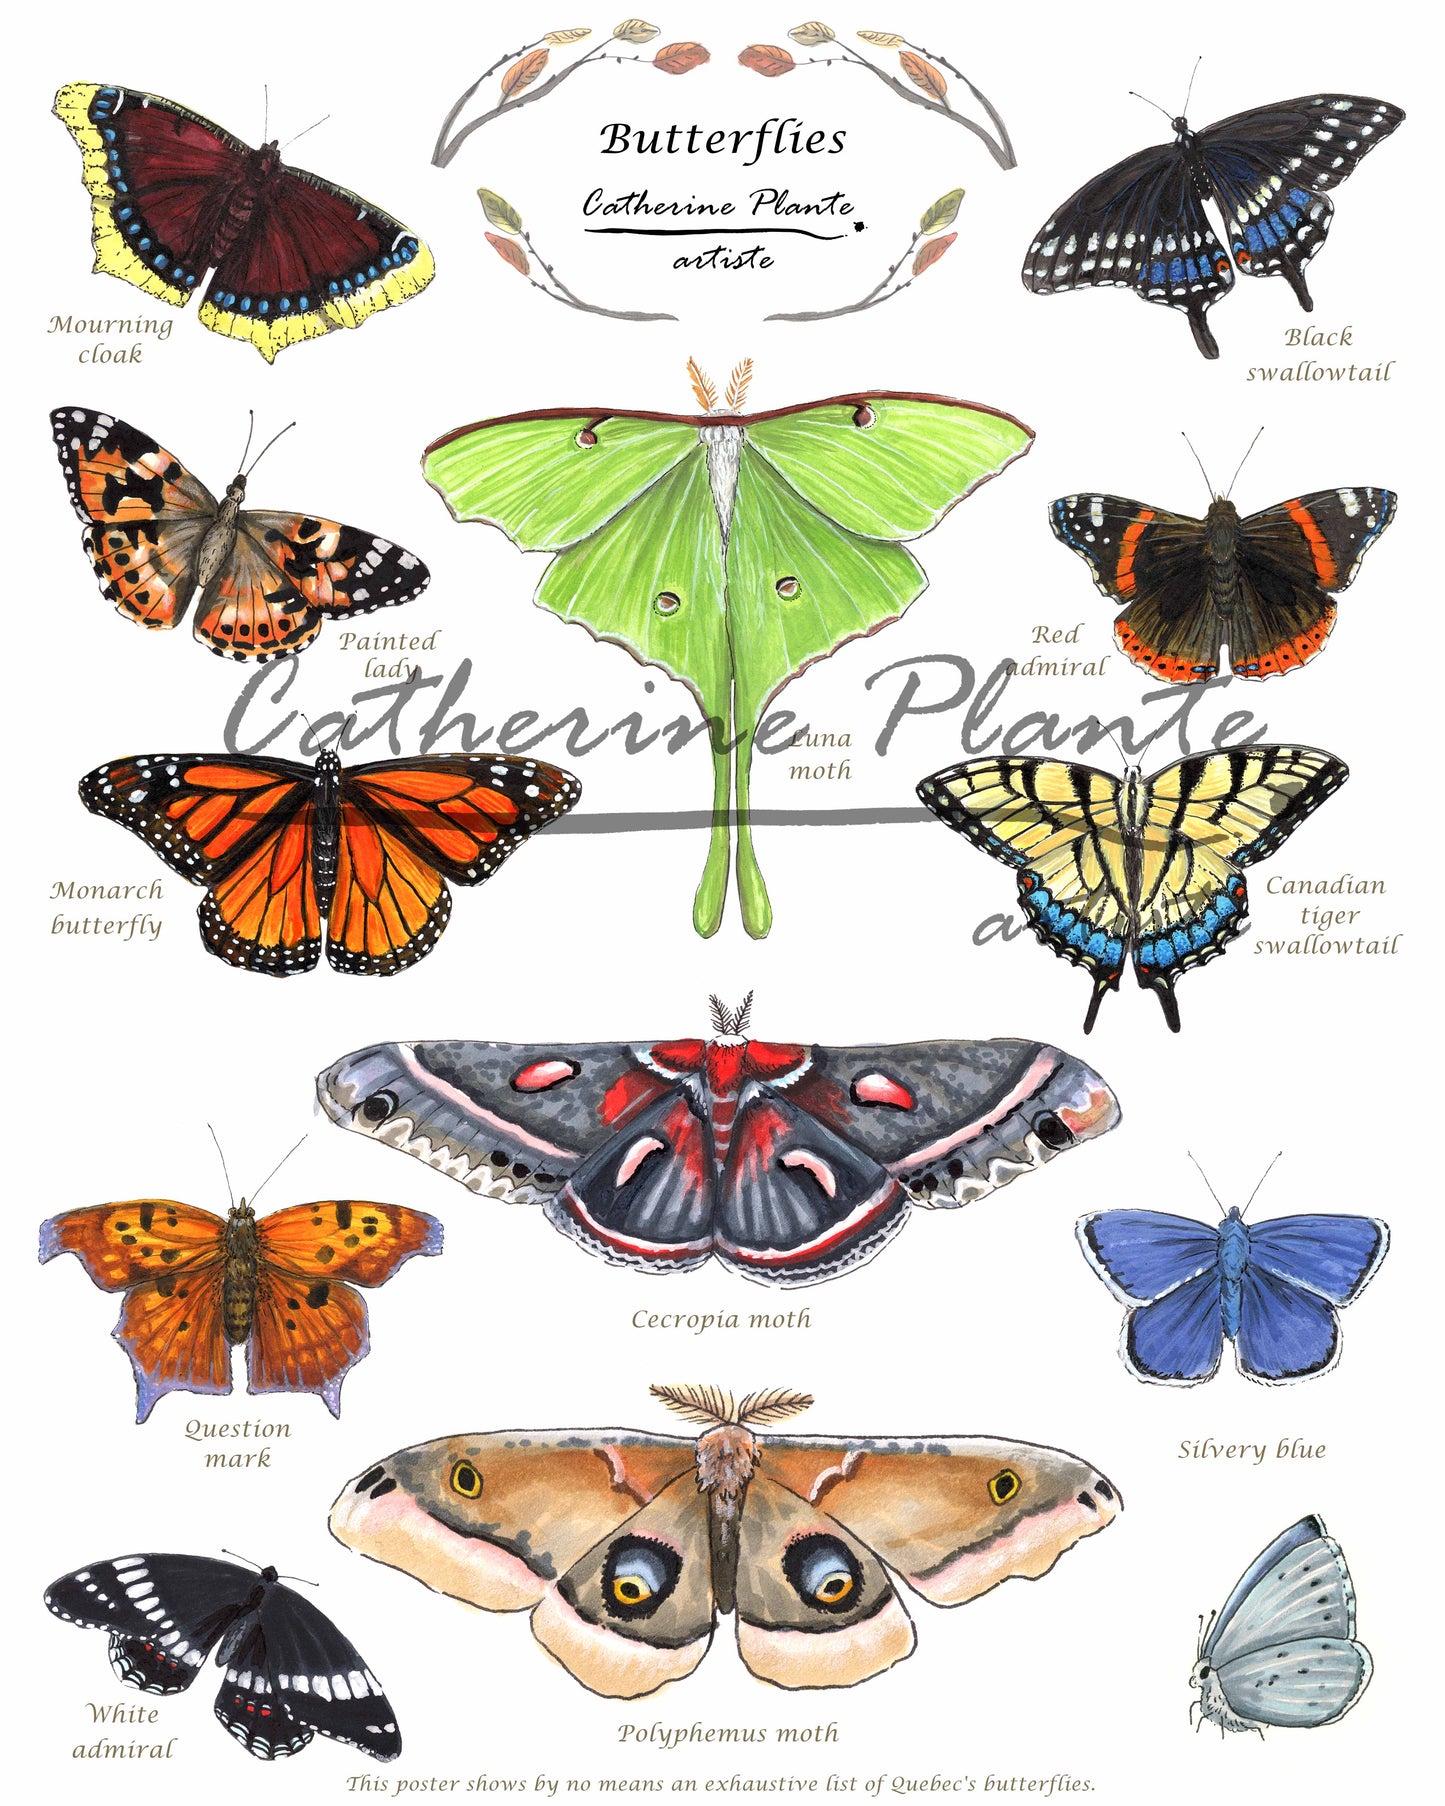 Affiche éducative - Les papillons